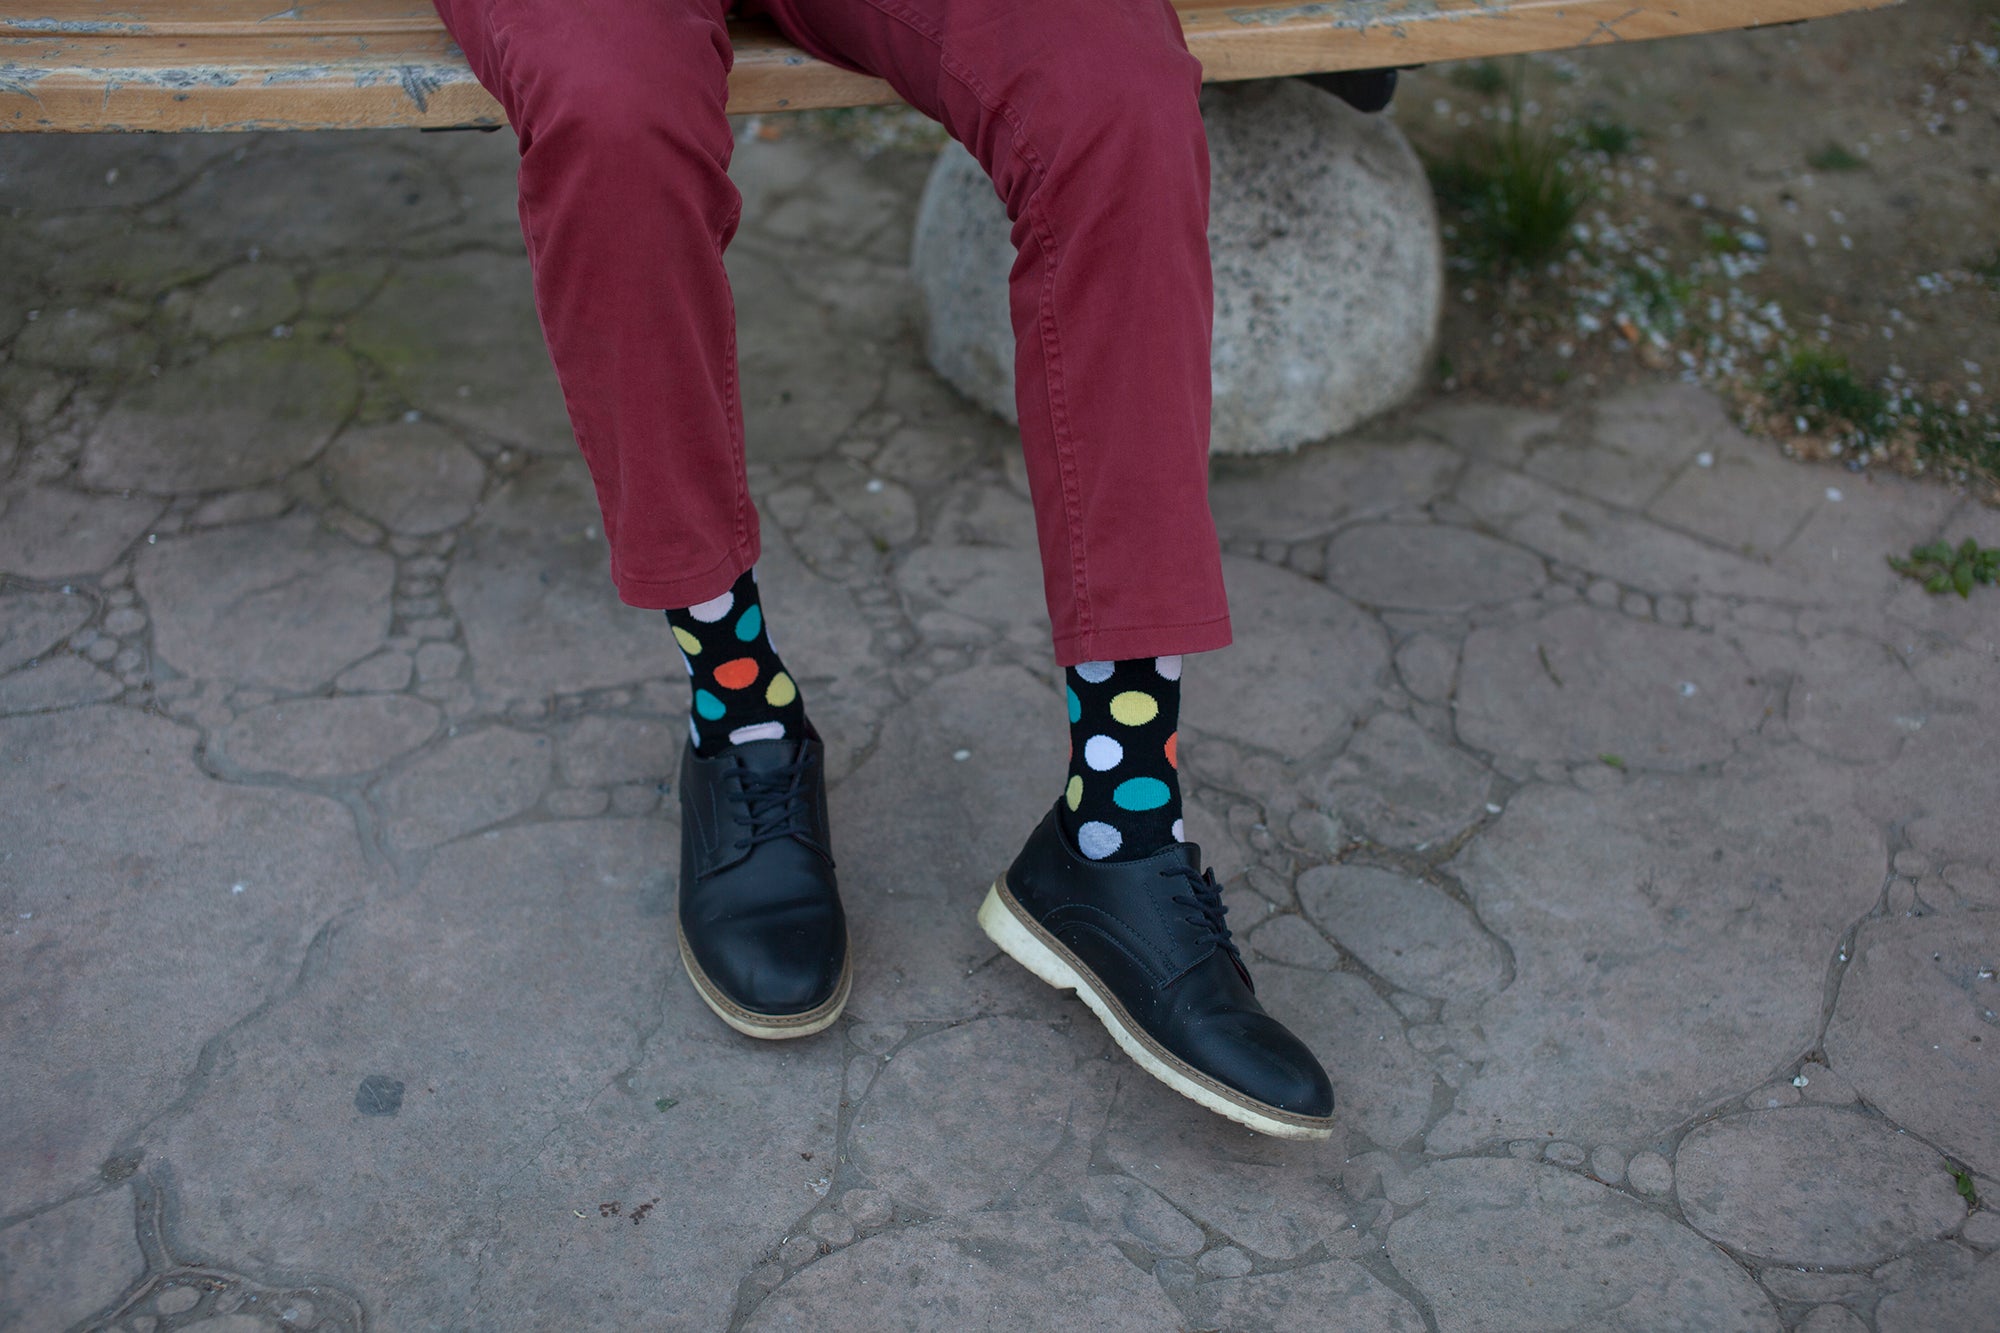 Men's Big Dots Socks